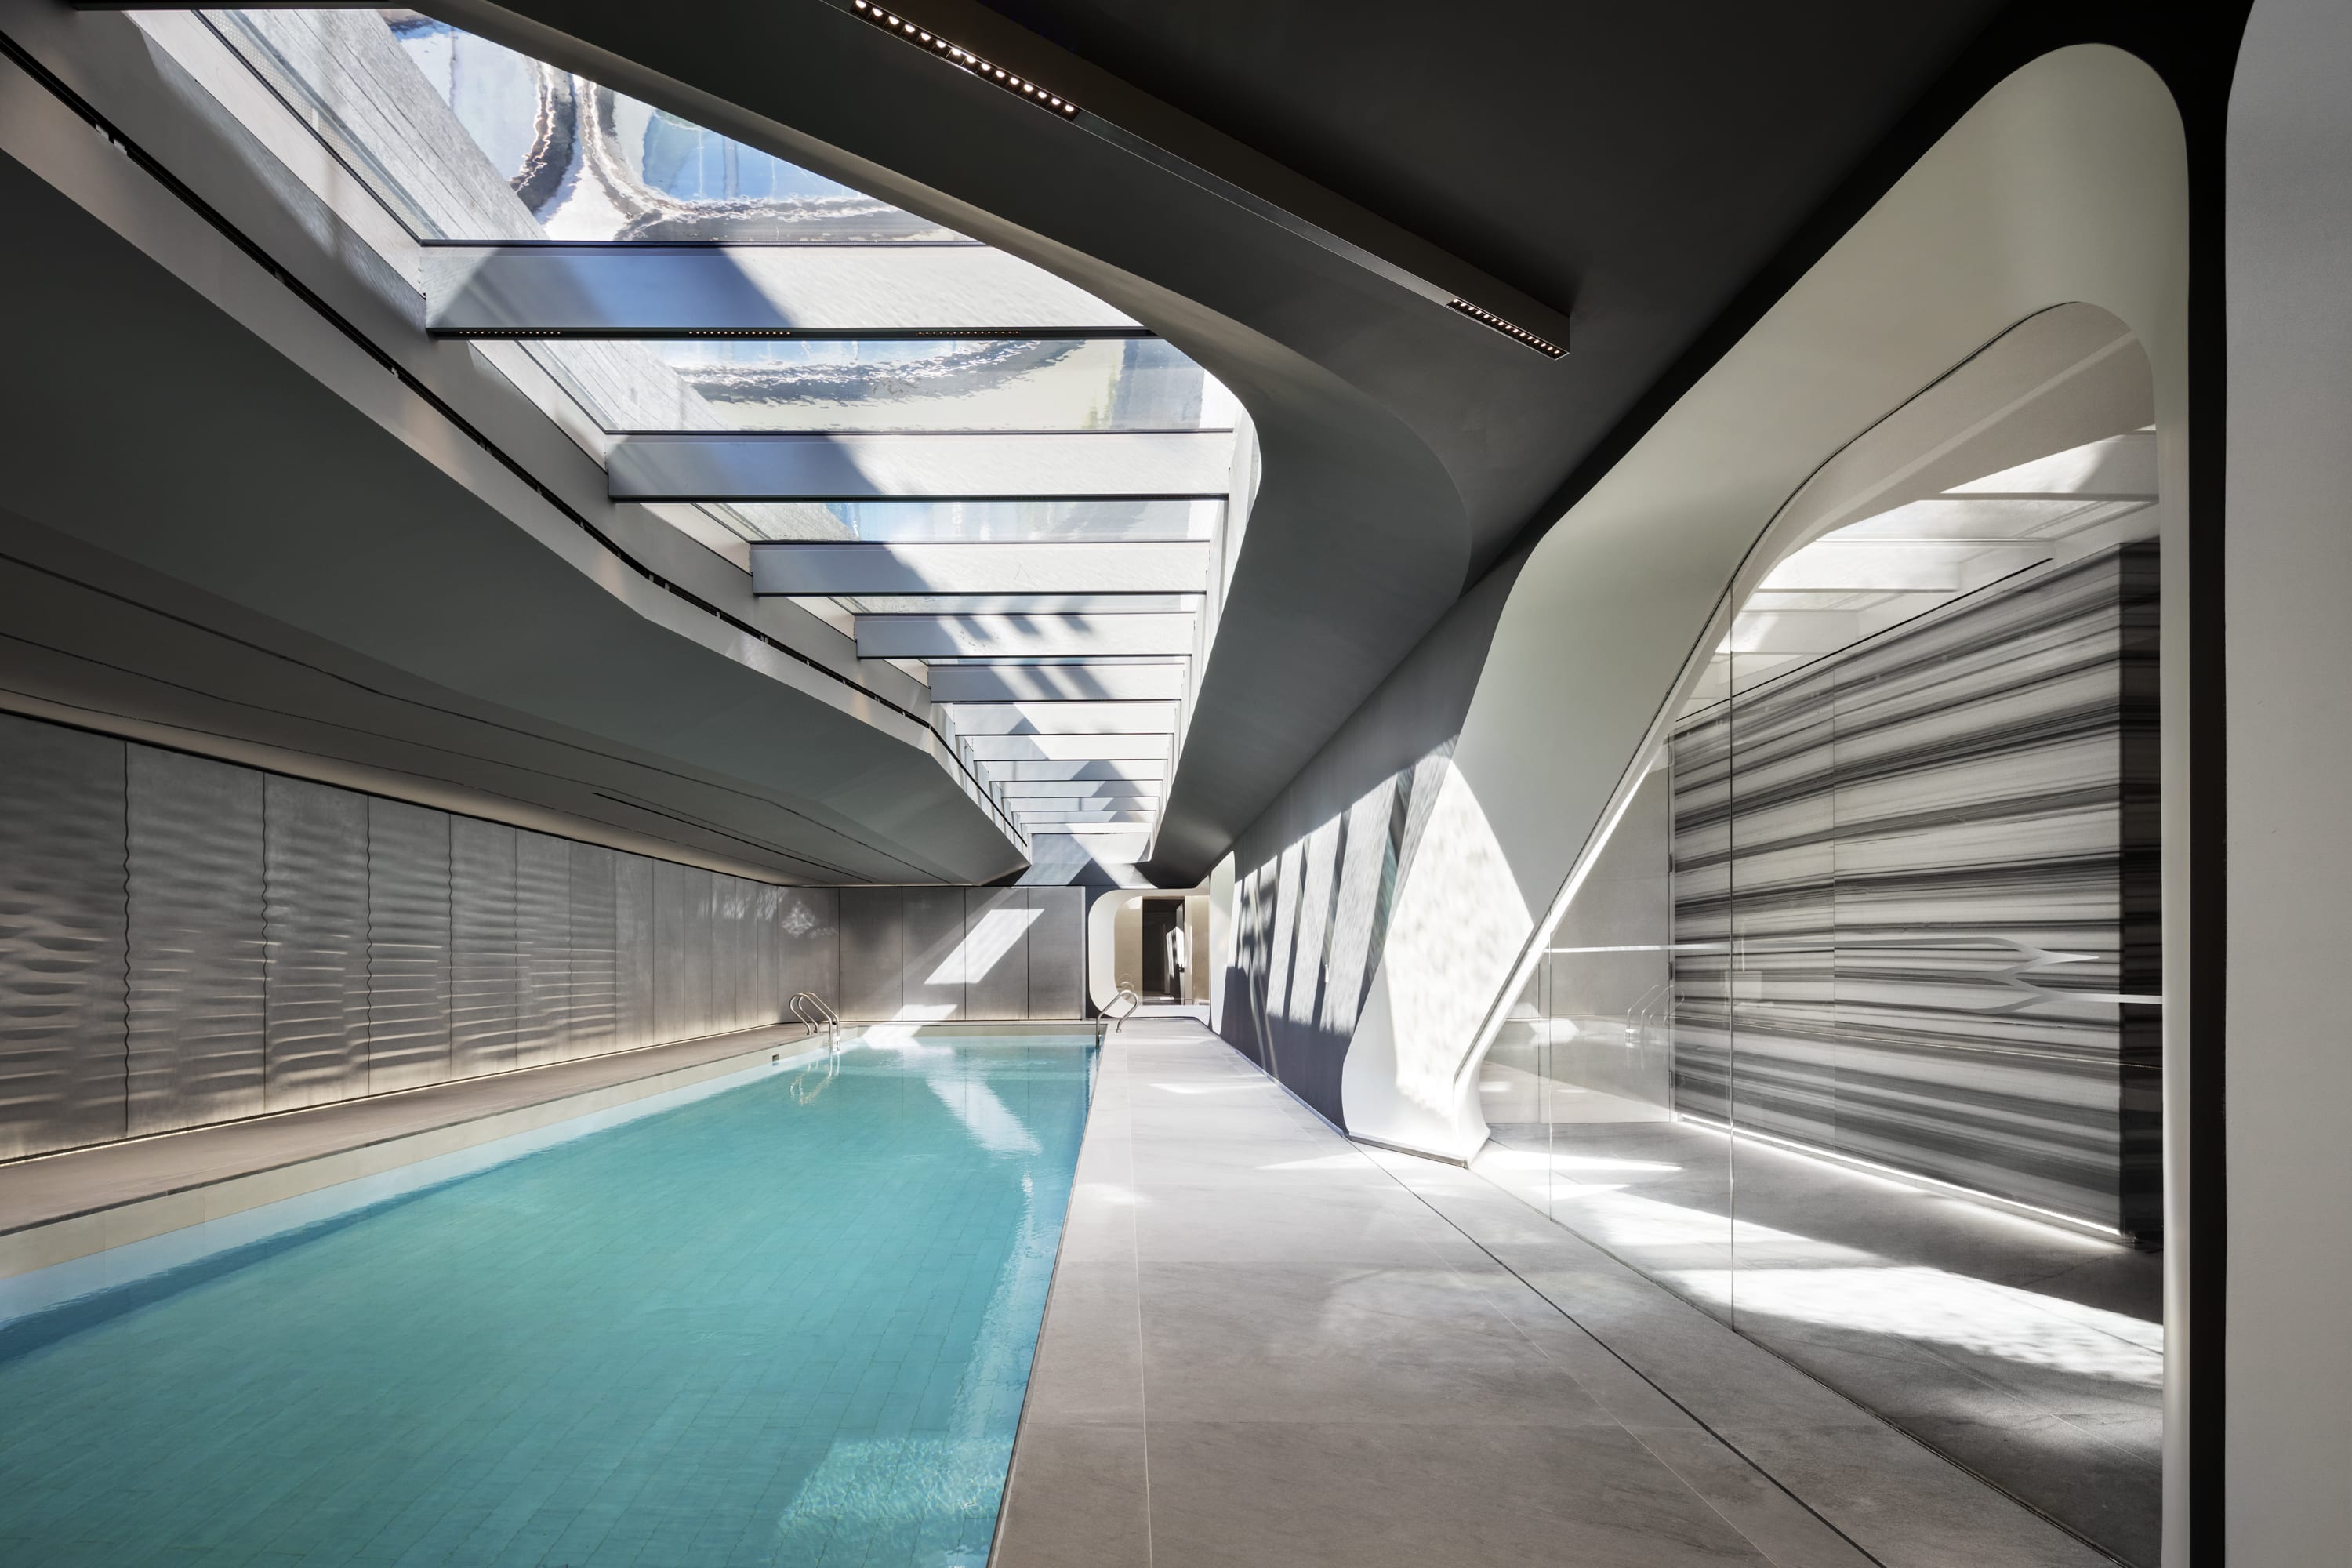 Zaha Hadid Architects, Scott Frances - 520 West 28th Street - HD Wallpaper 